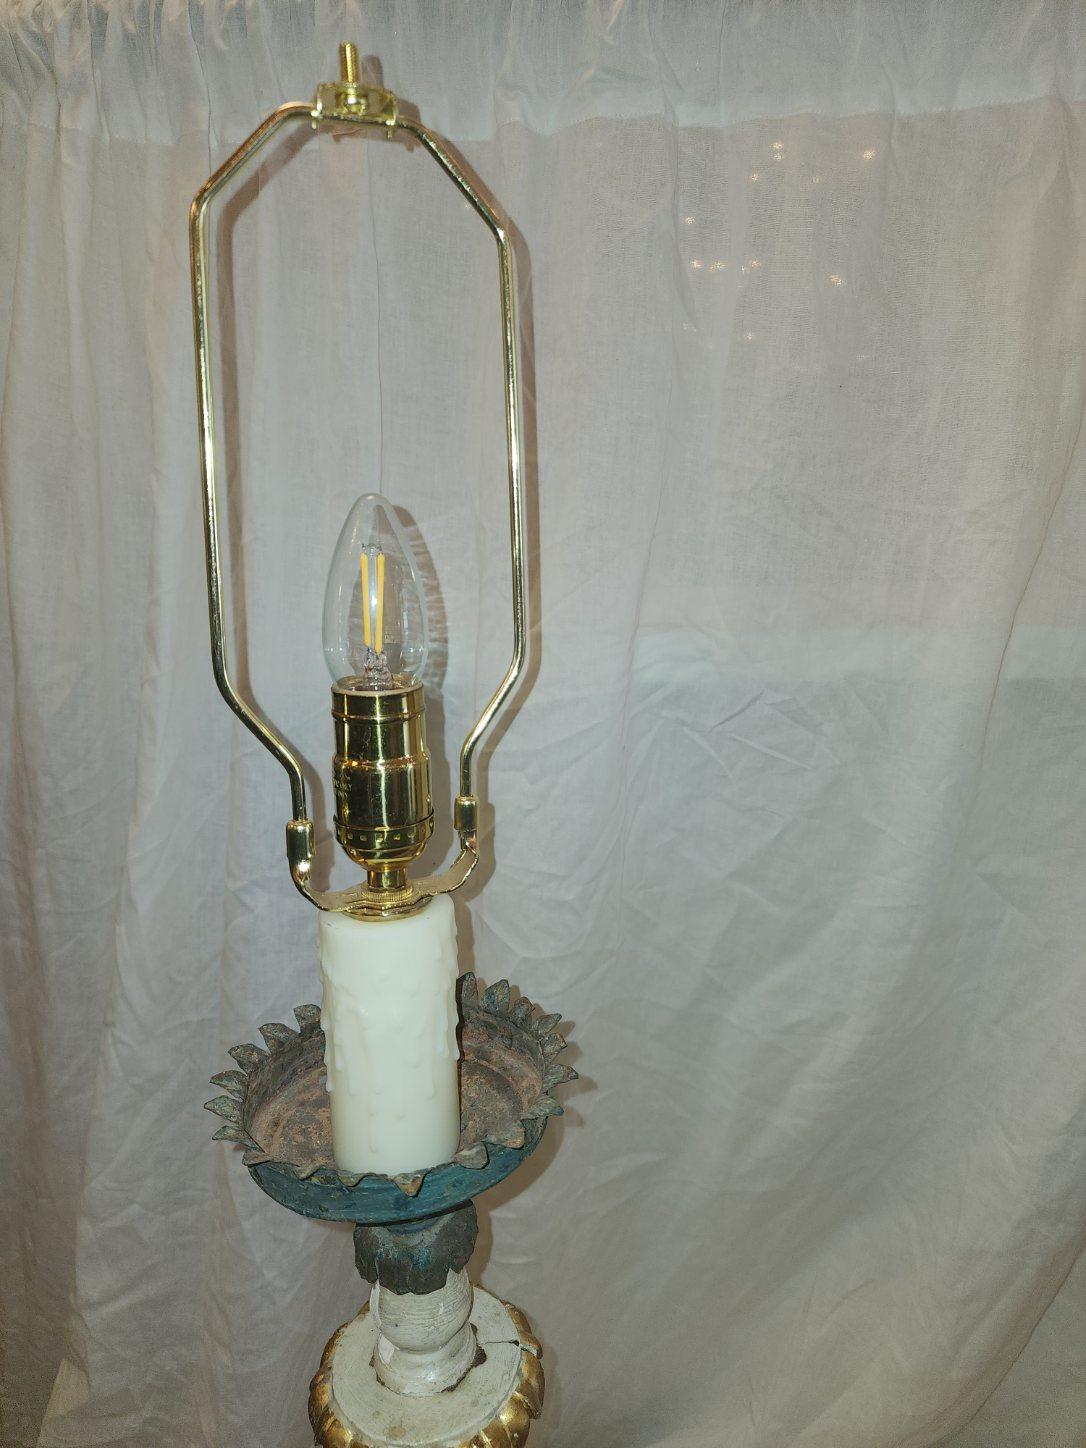 Ein Paar antike handgeschnitzte italienische Lampen. Diese zeitlosen Artefakte stammen aus dem frühen 18. Jahrhundert. Alle Originalteile sind intakt. Die Teile wurden nach US-Standard neu verkabelt. Das Stück hat altersbedingte